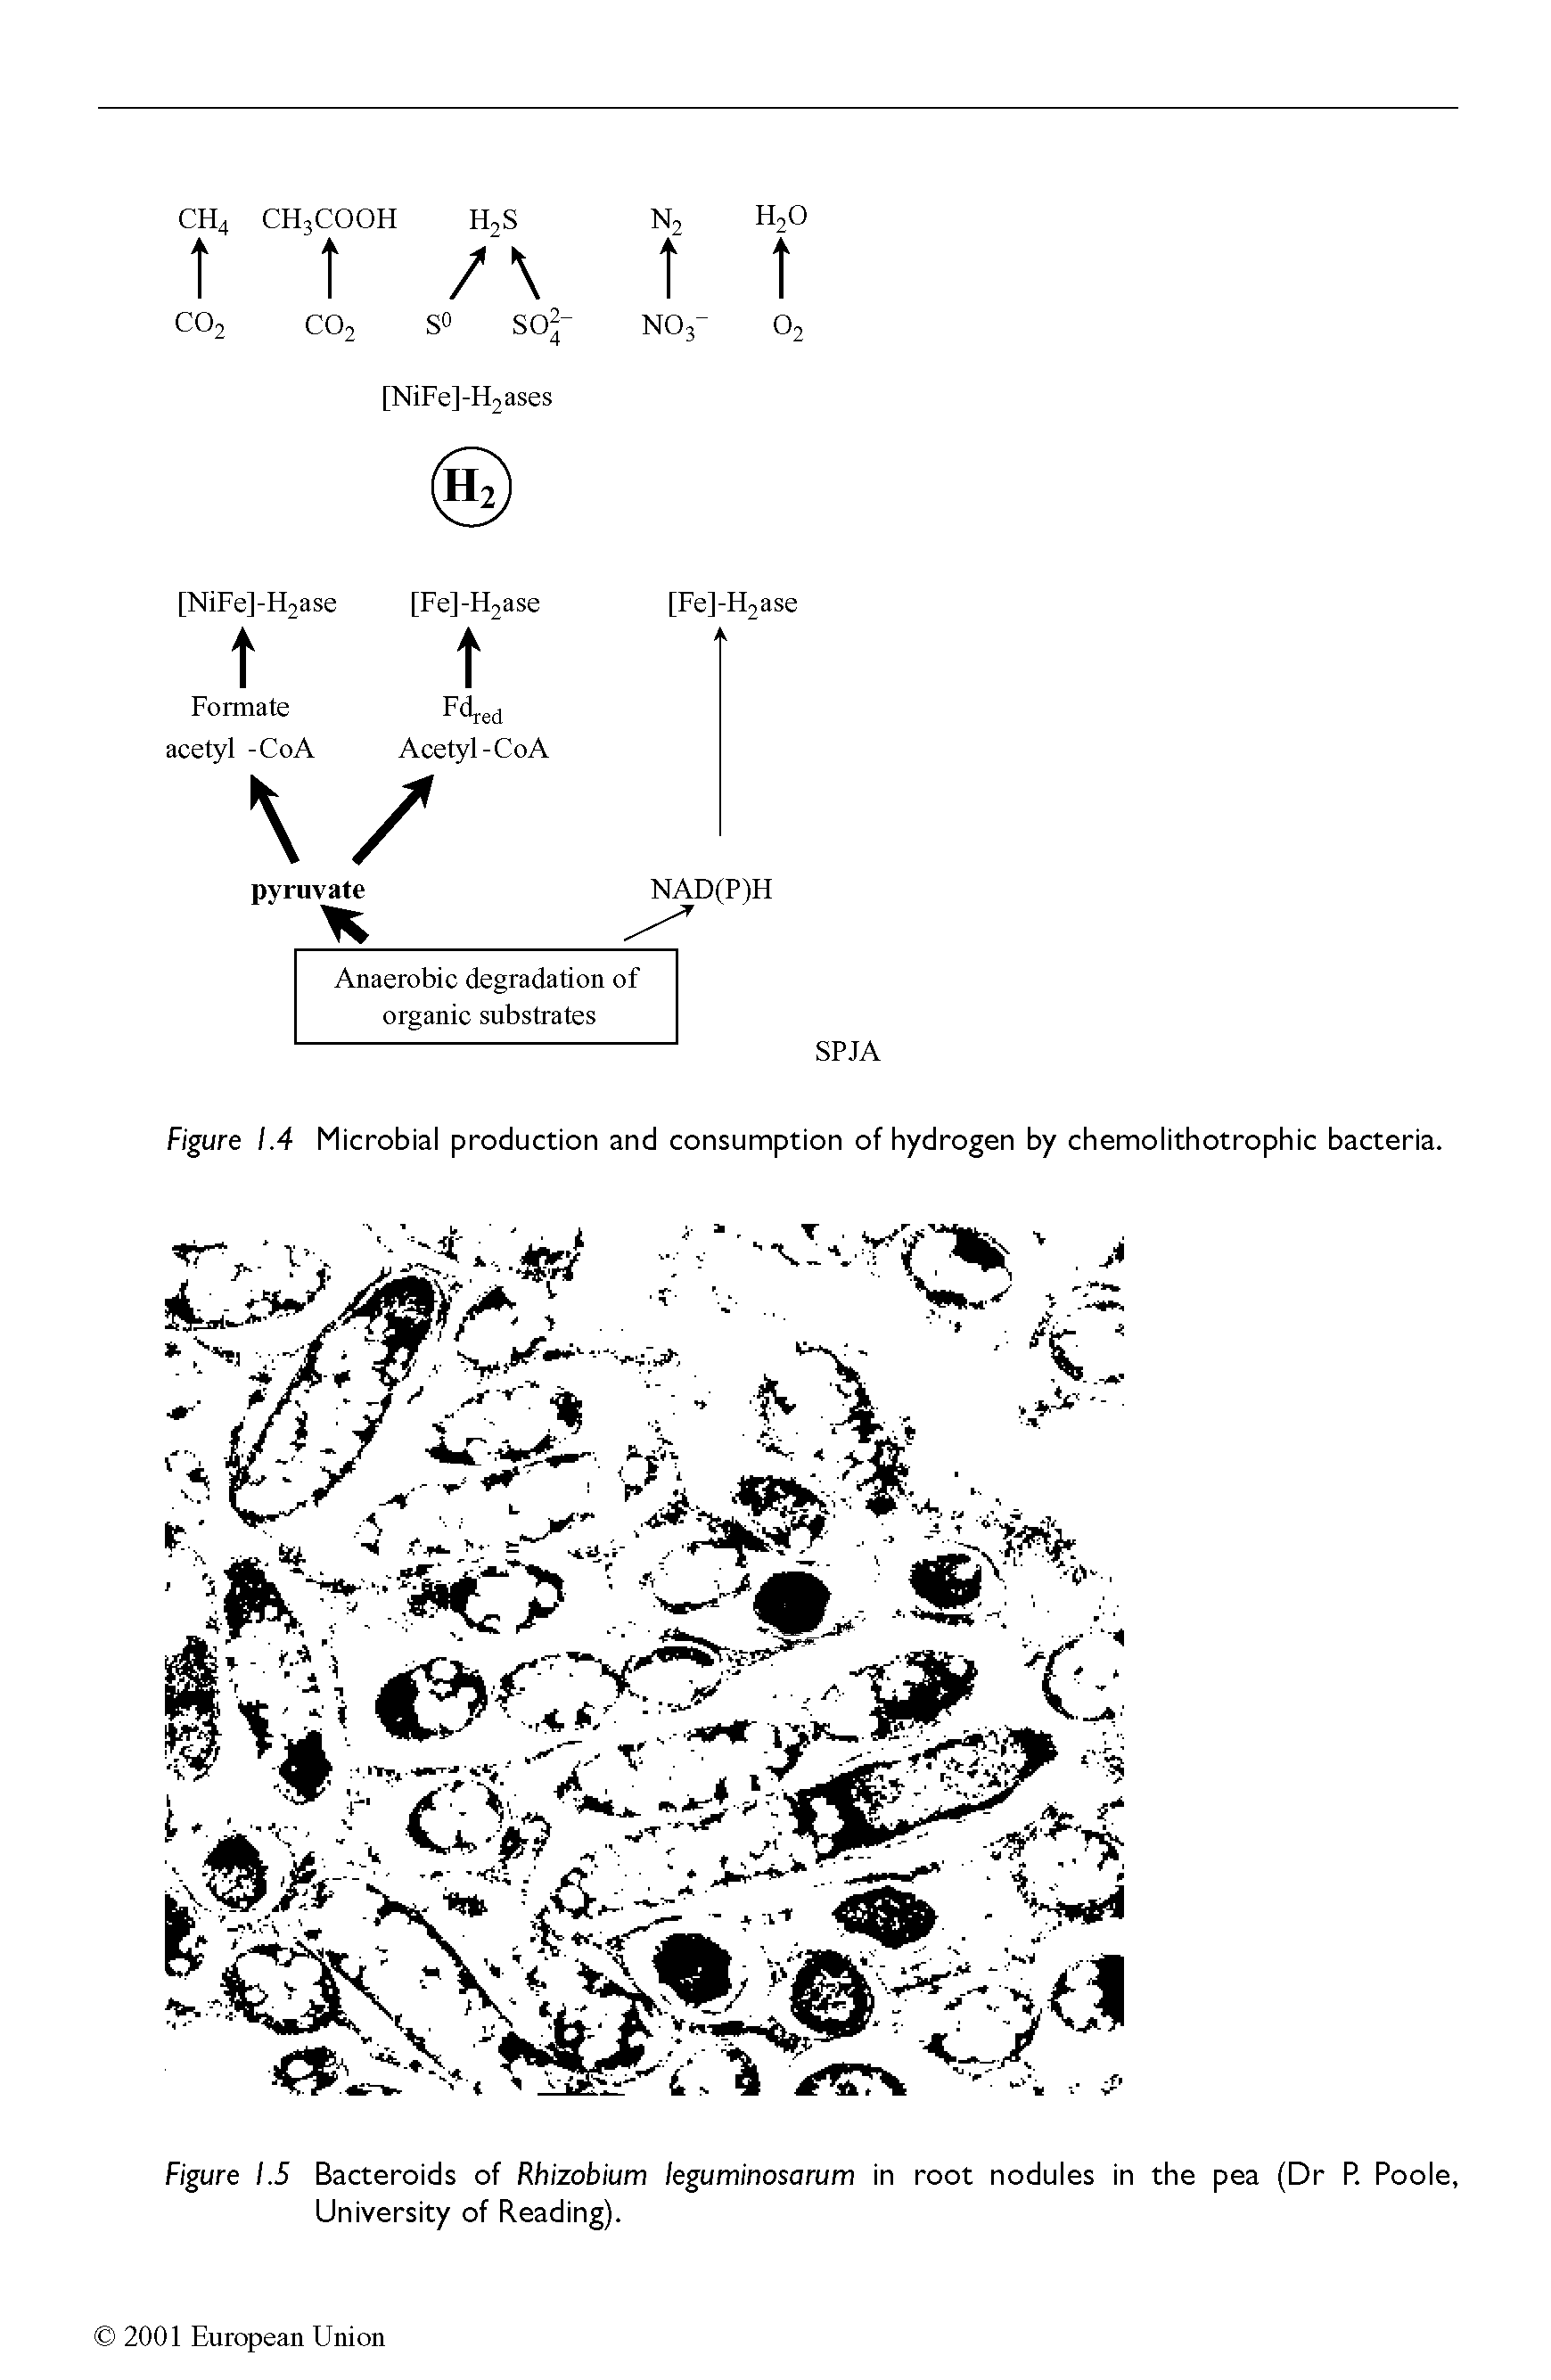 Figure 1.5 Bacteroids of Rhizobium leguminosarum in root nodules in the pea (Dr P. Poole, University of Reading).